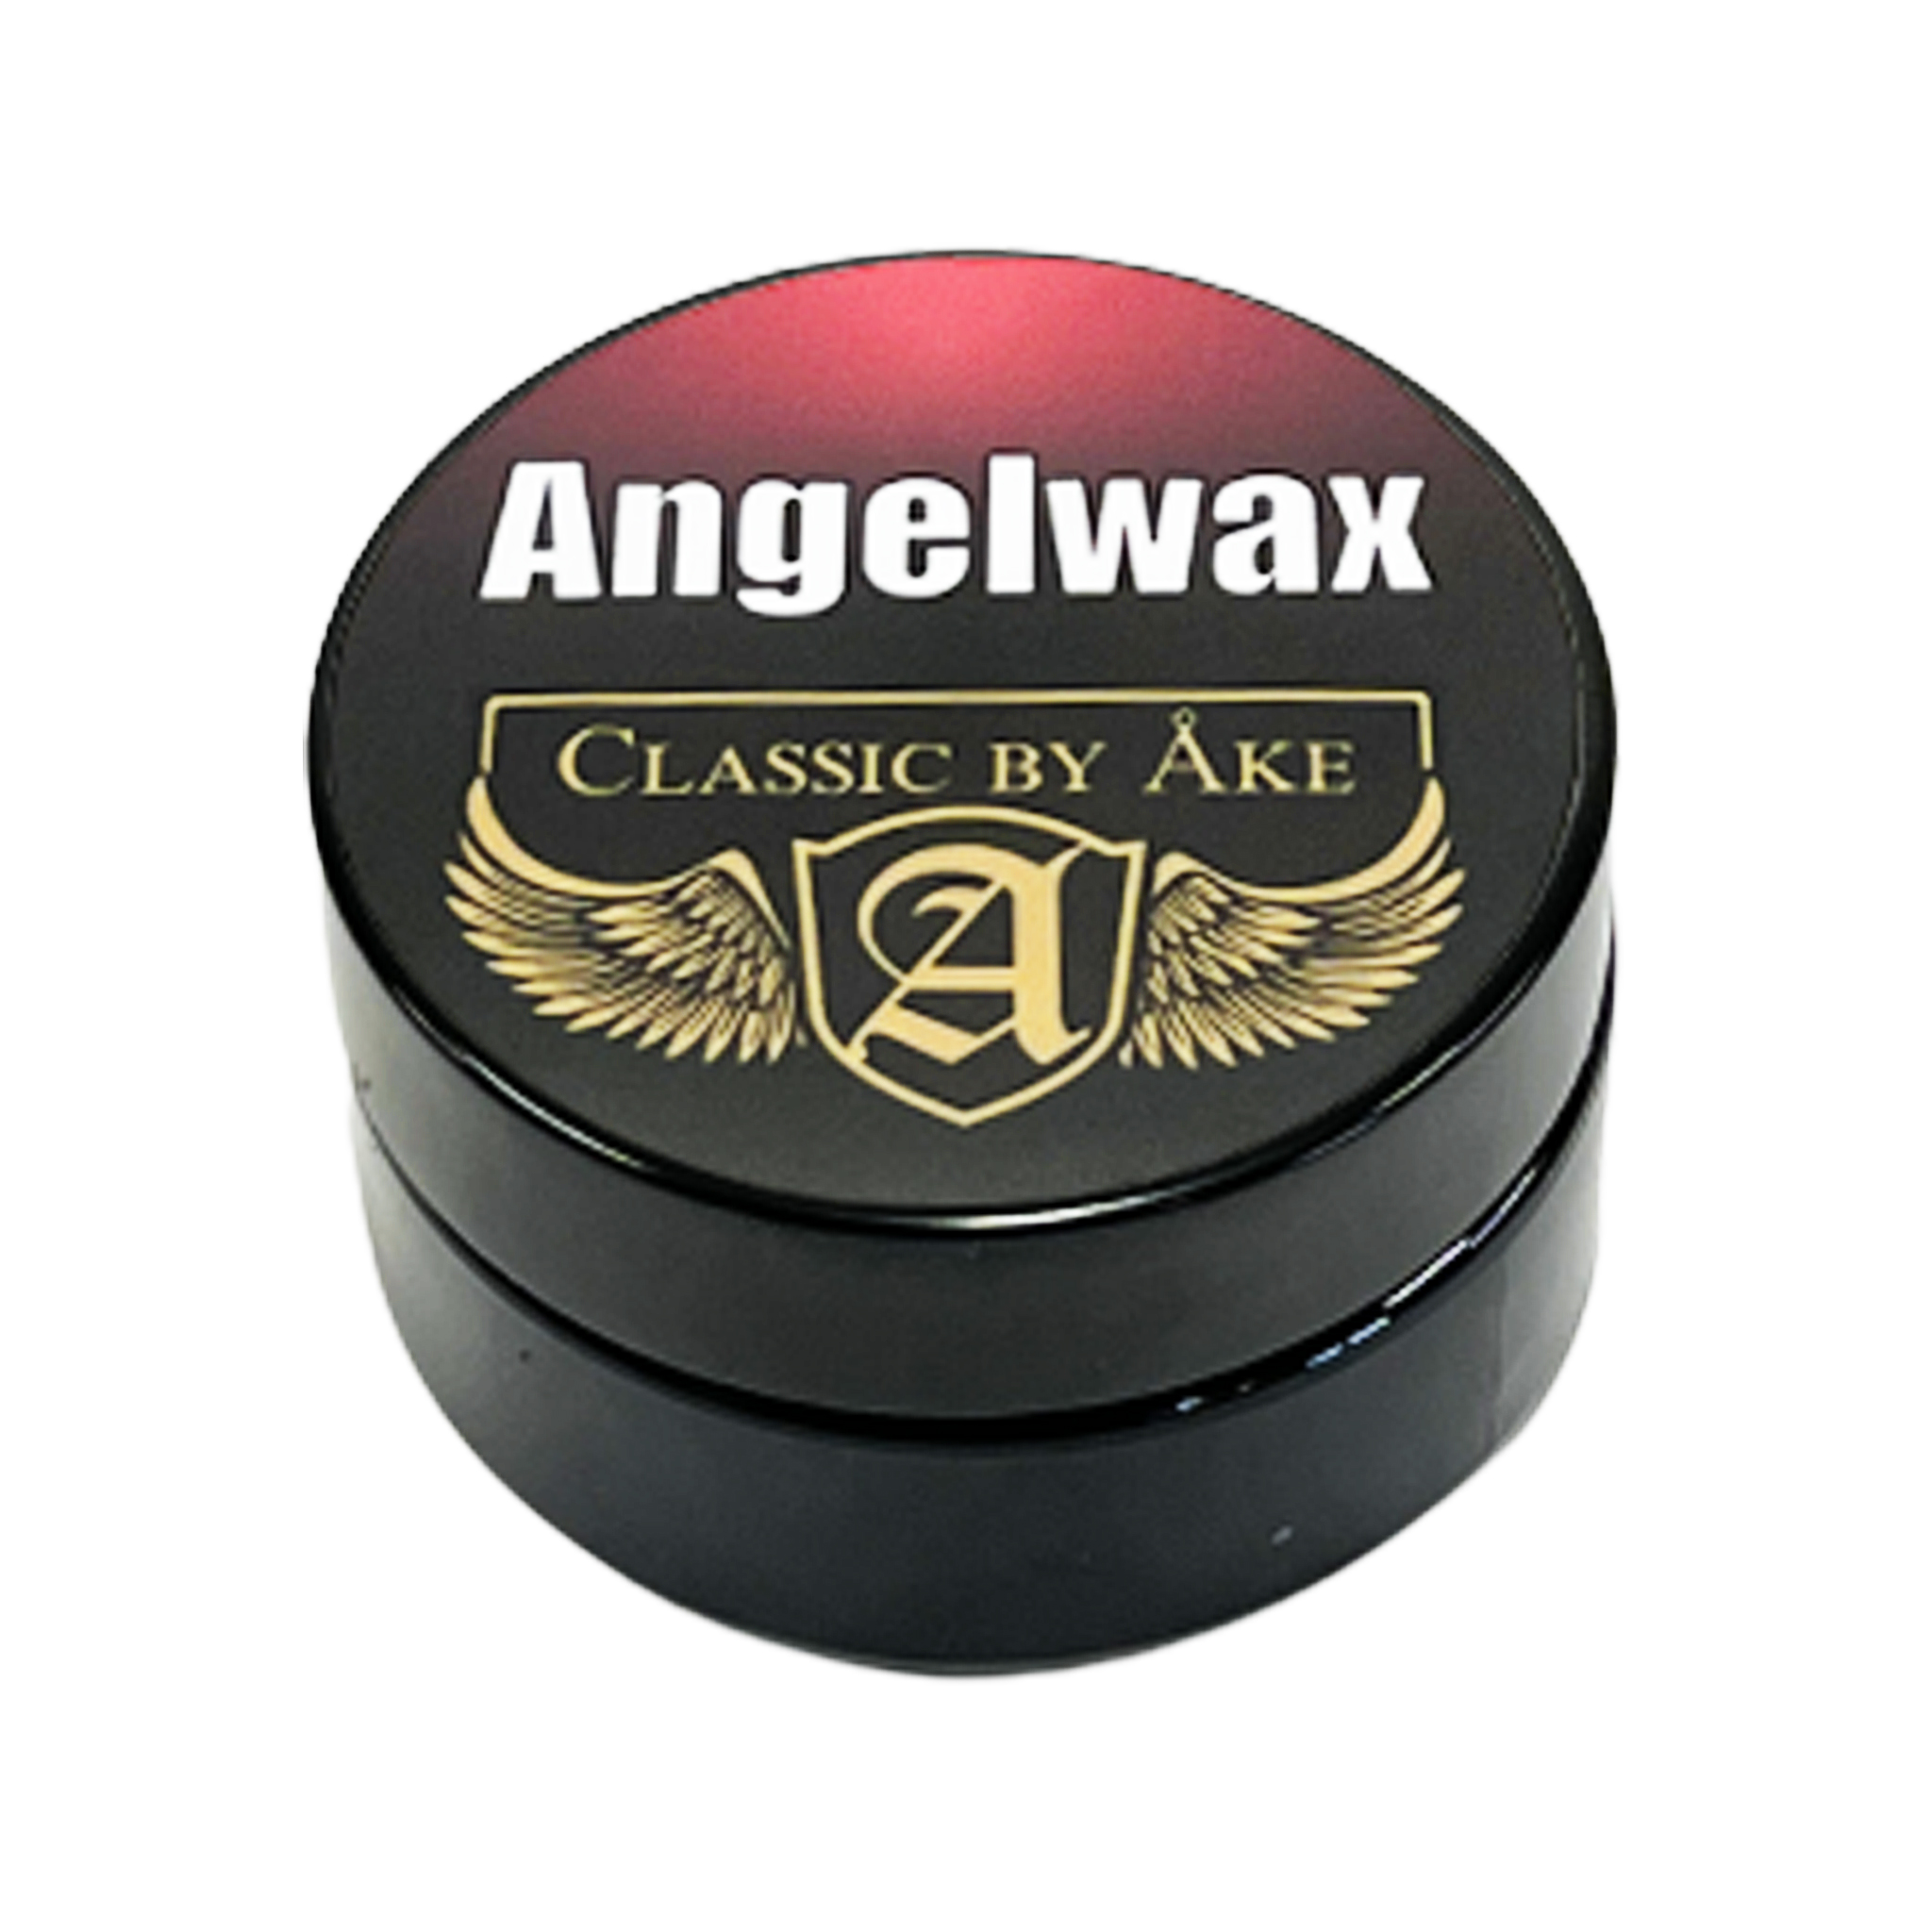 Angelwax Classic By Åke Wax